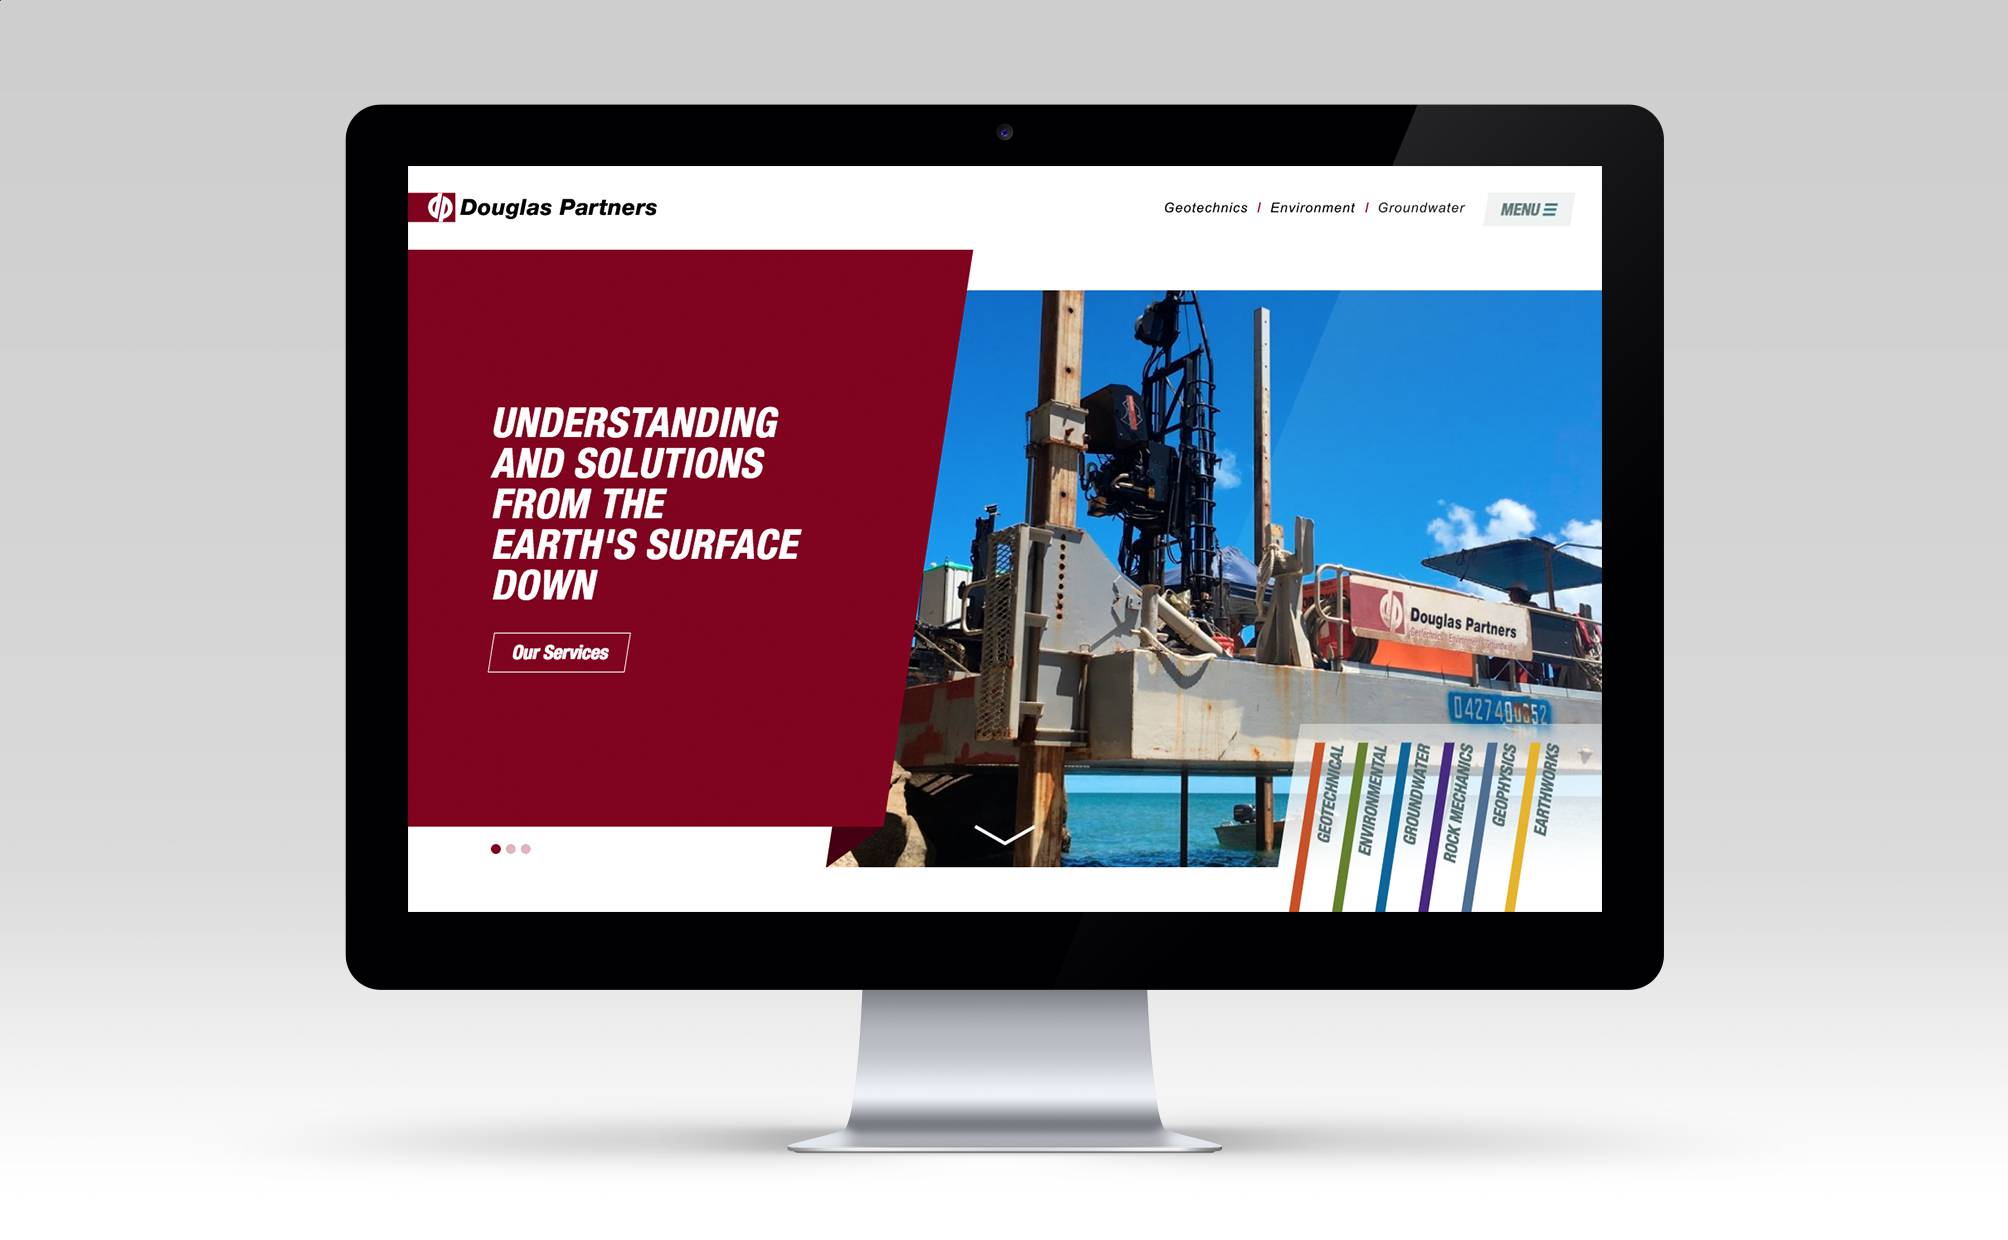 The new-look Douglas Partners website